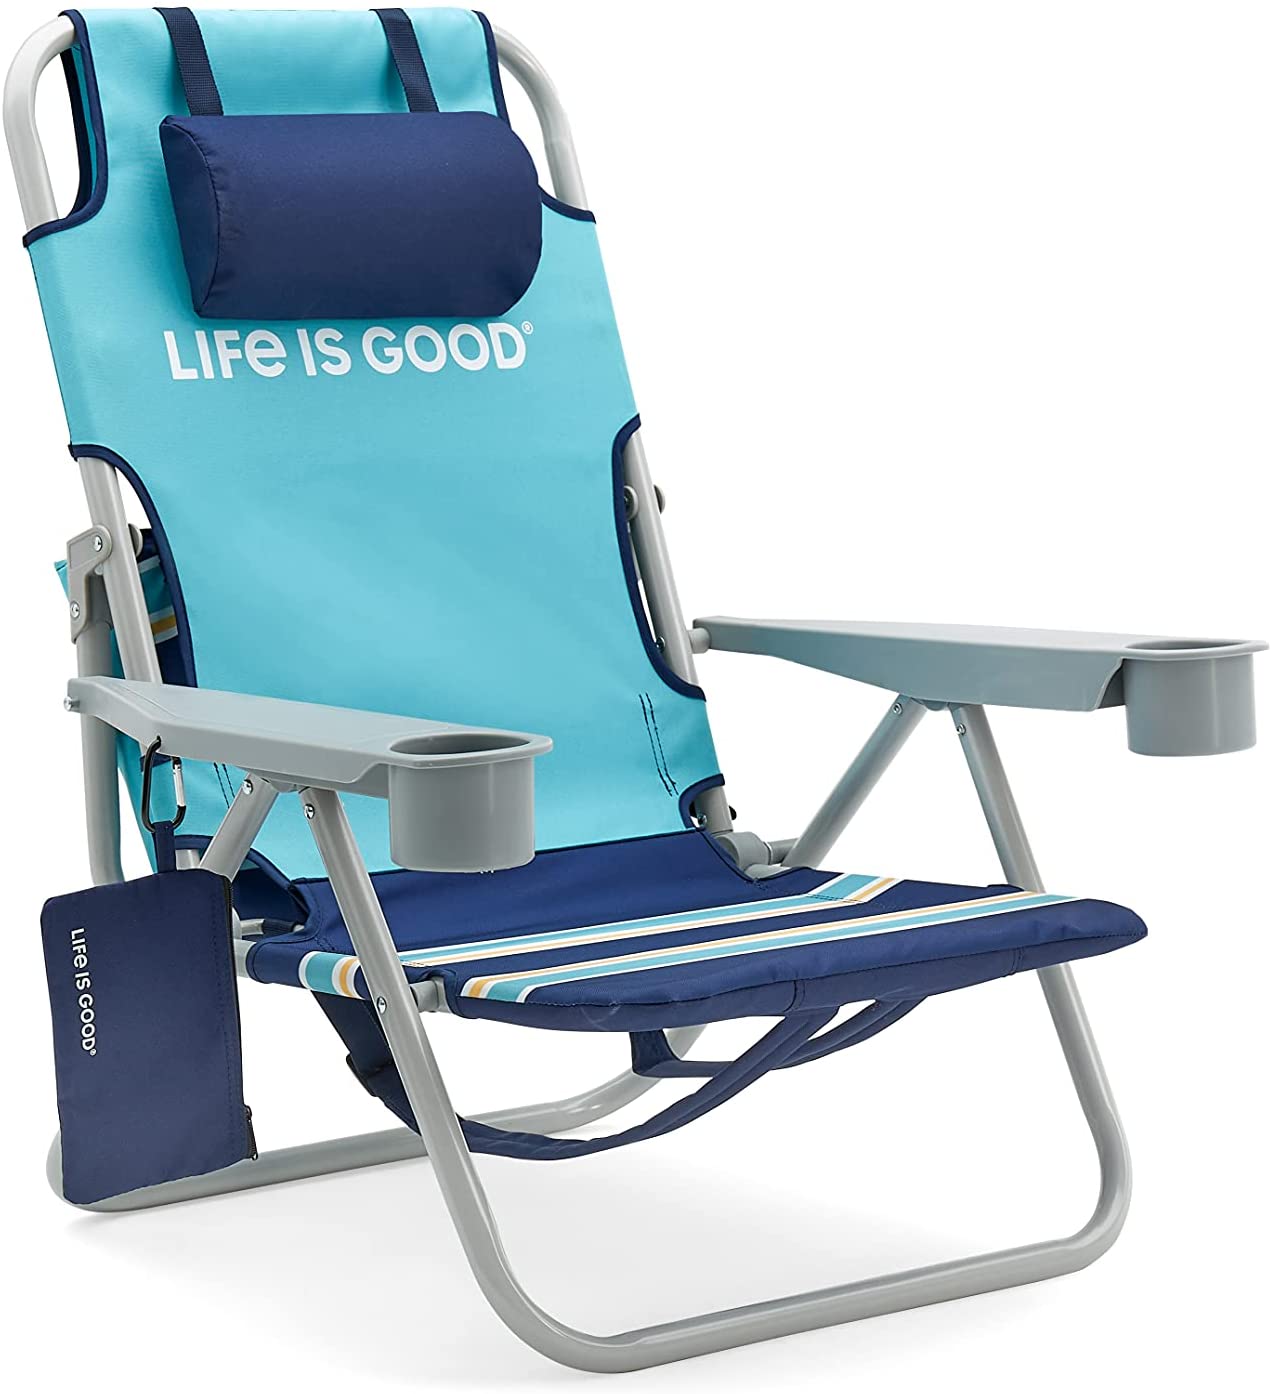 Life Is Good Beach Chair, best beach chairs